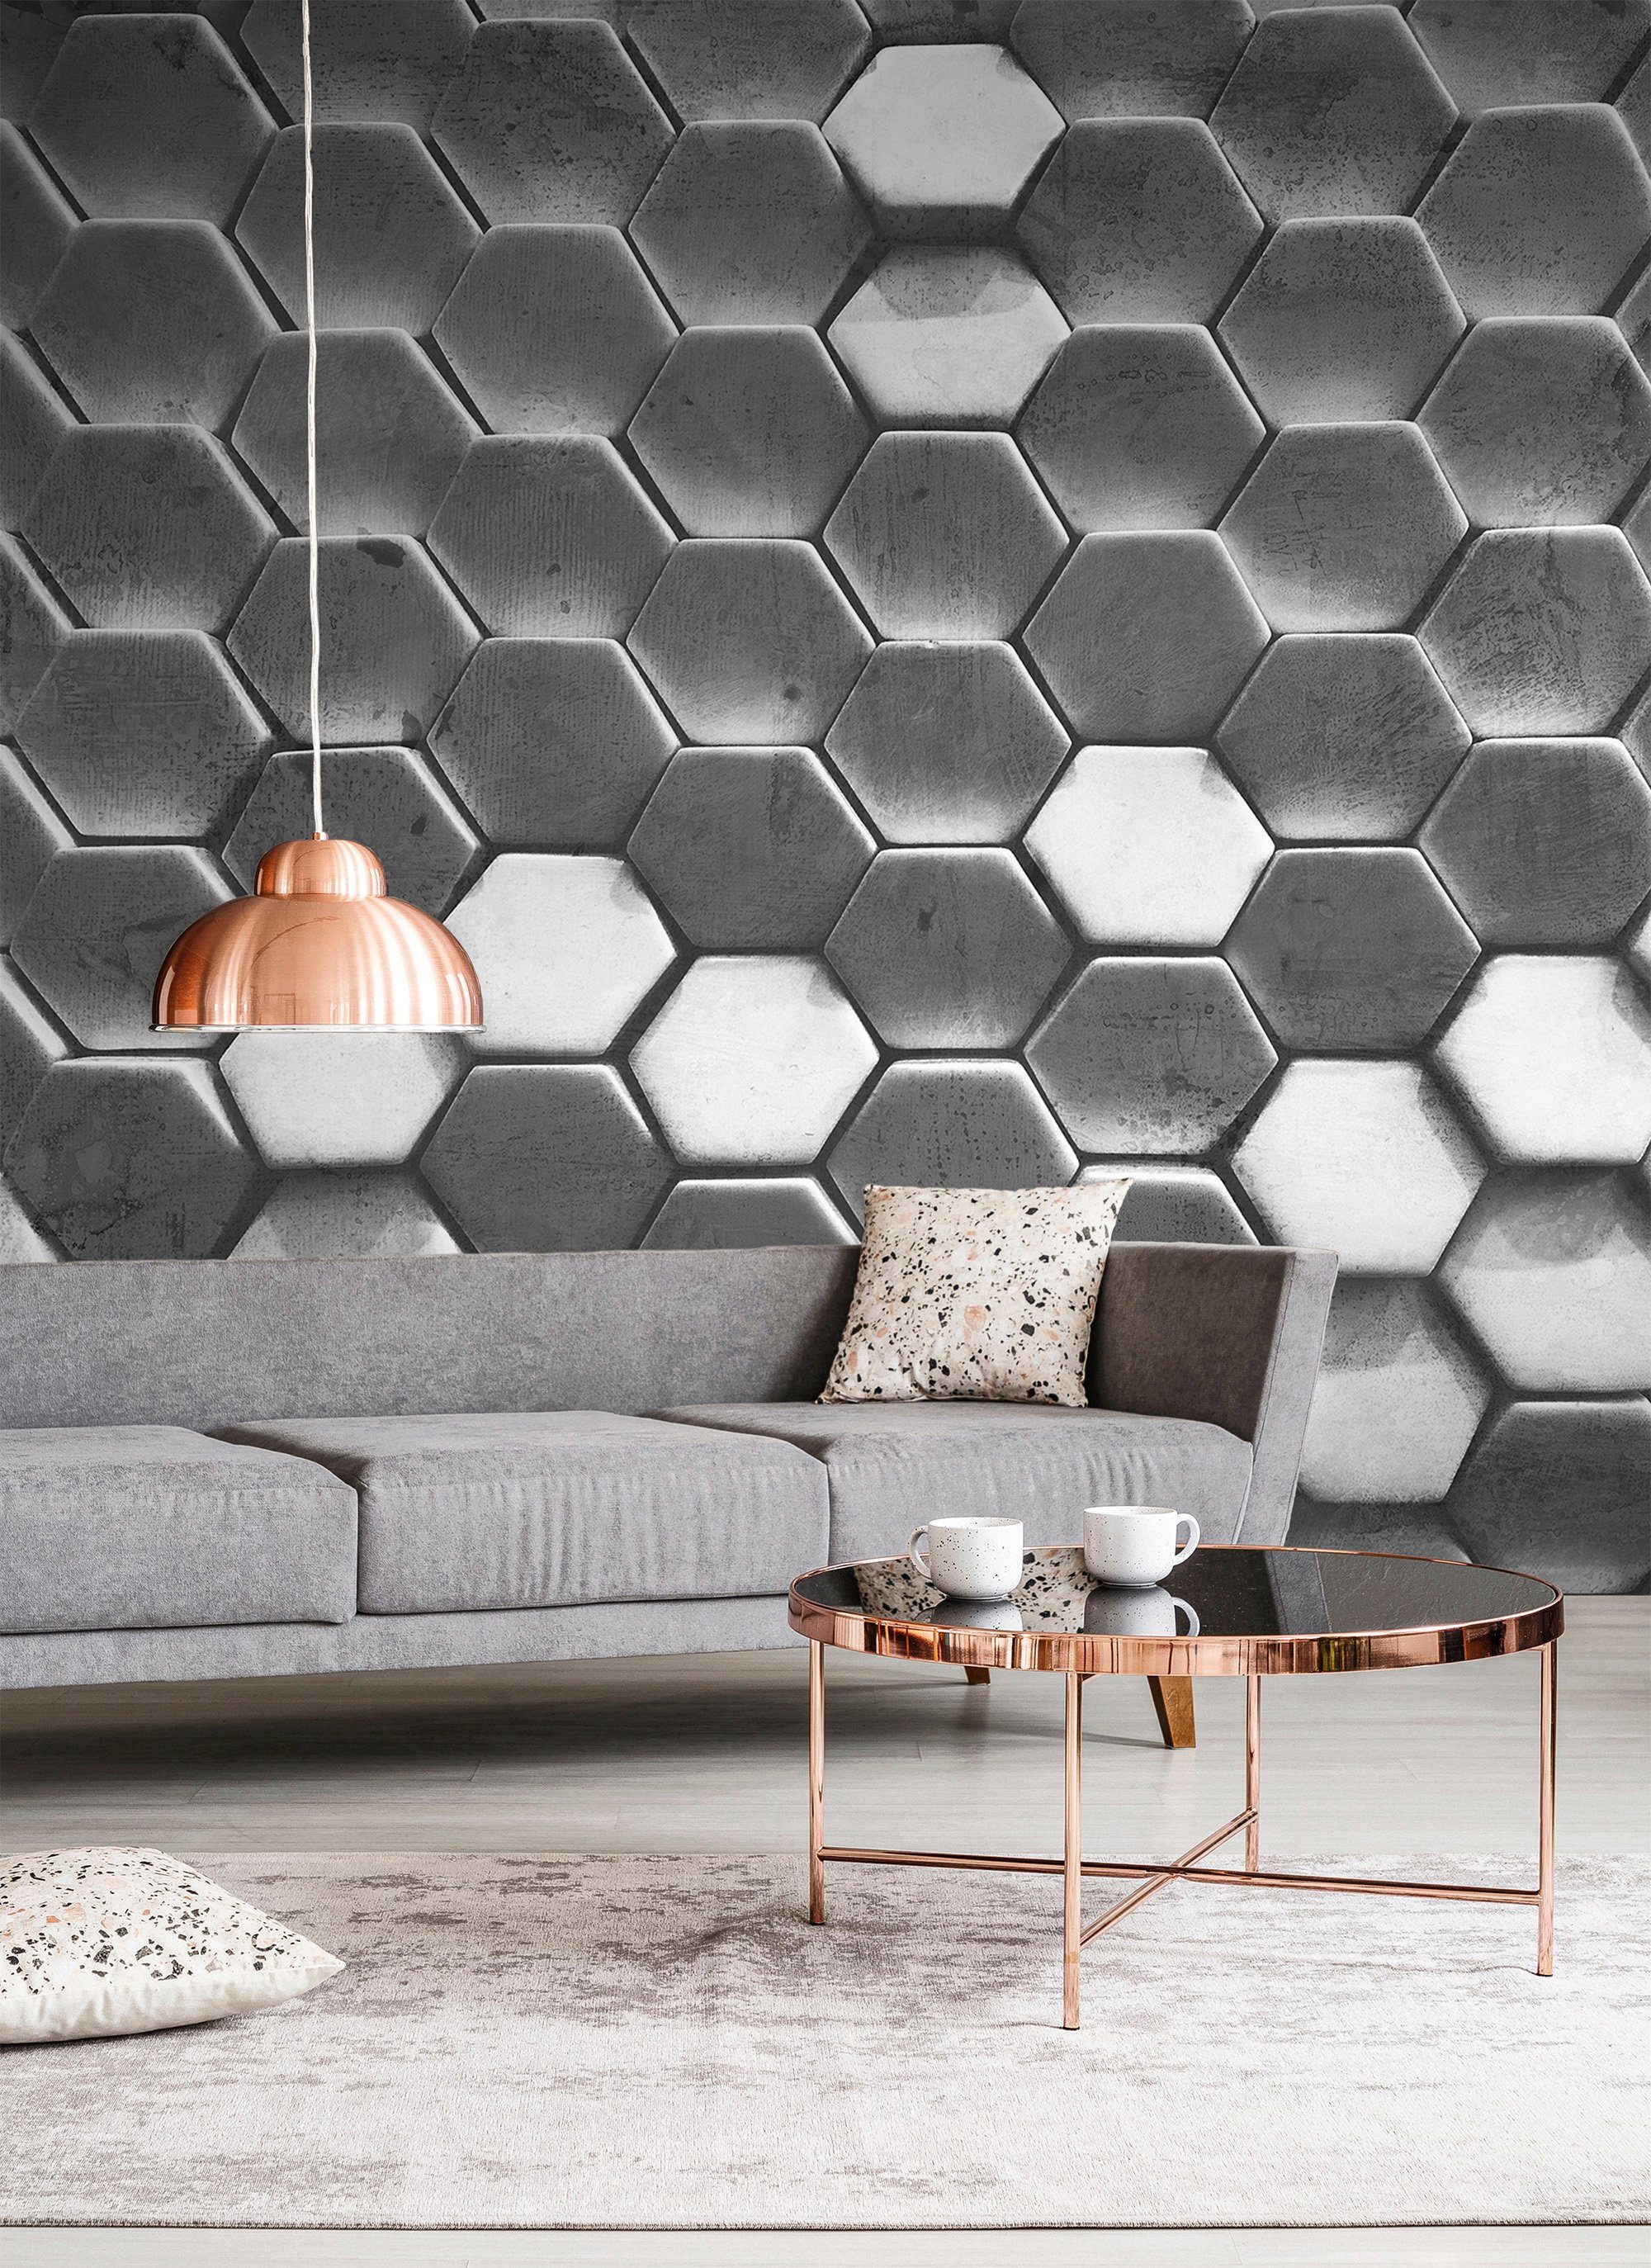 Wand, (5 1, glatt, walls Fototapete Decke Vlies, St), Designwalls Schräge, Hexagon living Surface